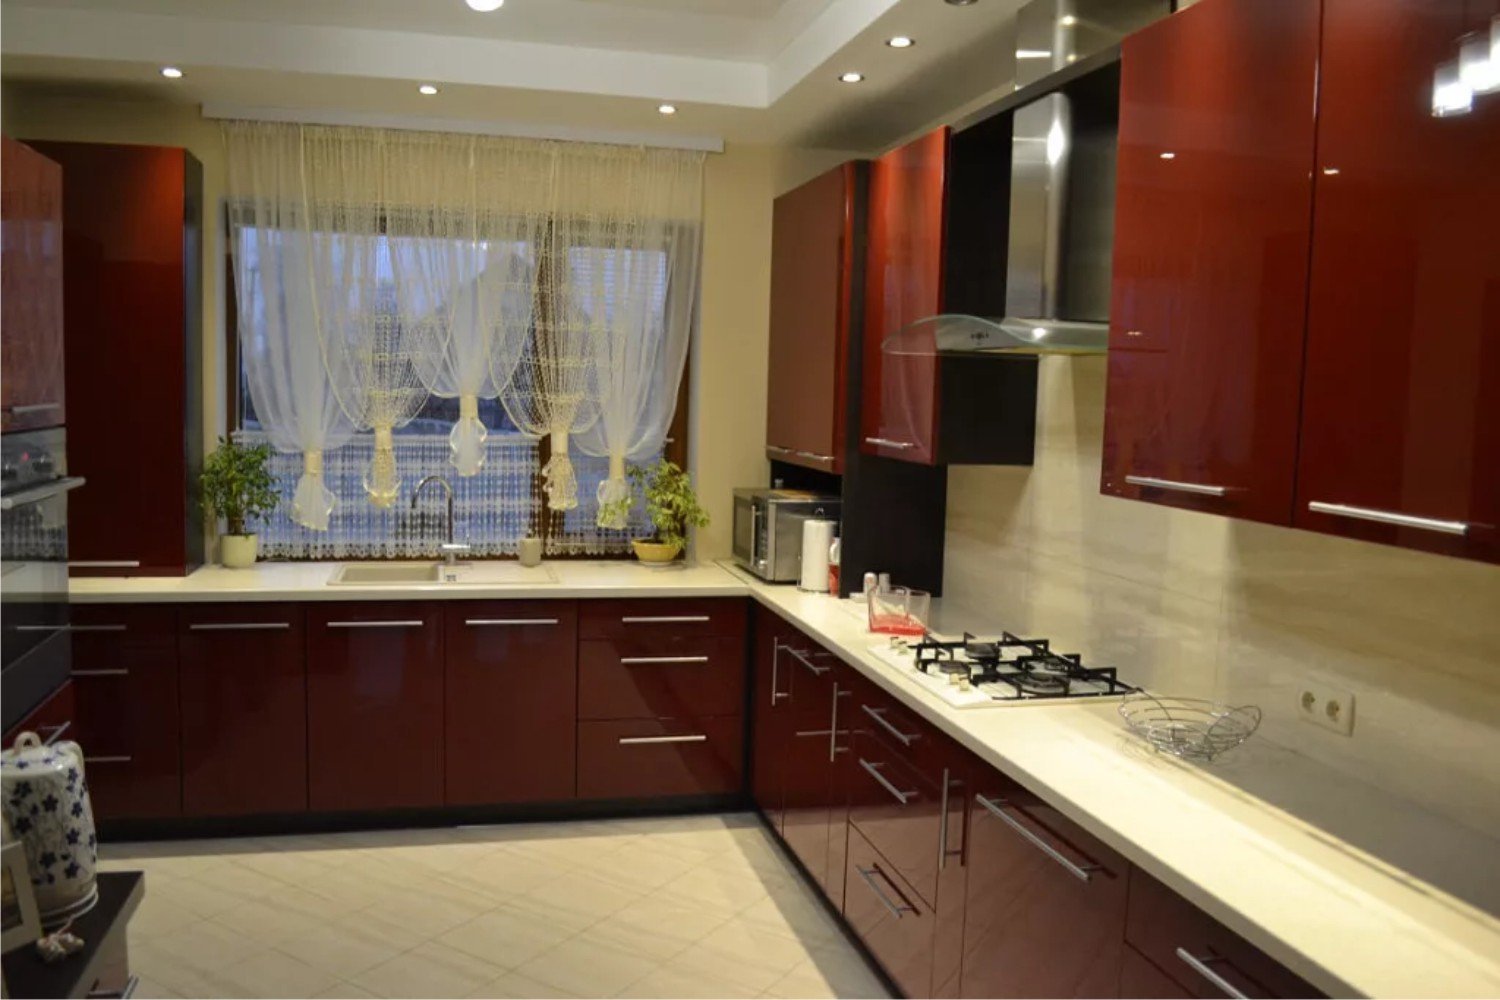 Кухня бордового цвета — положительные и отрицательные стороны бордового дизайна в кухне (60 фото)